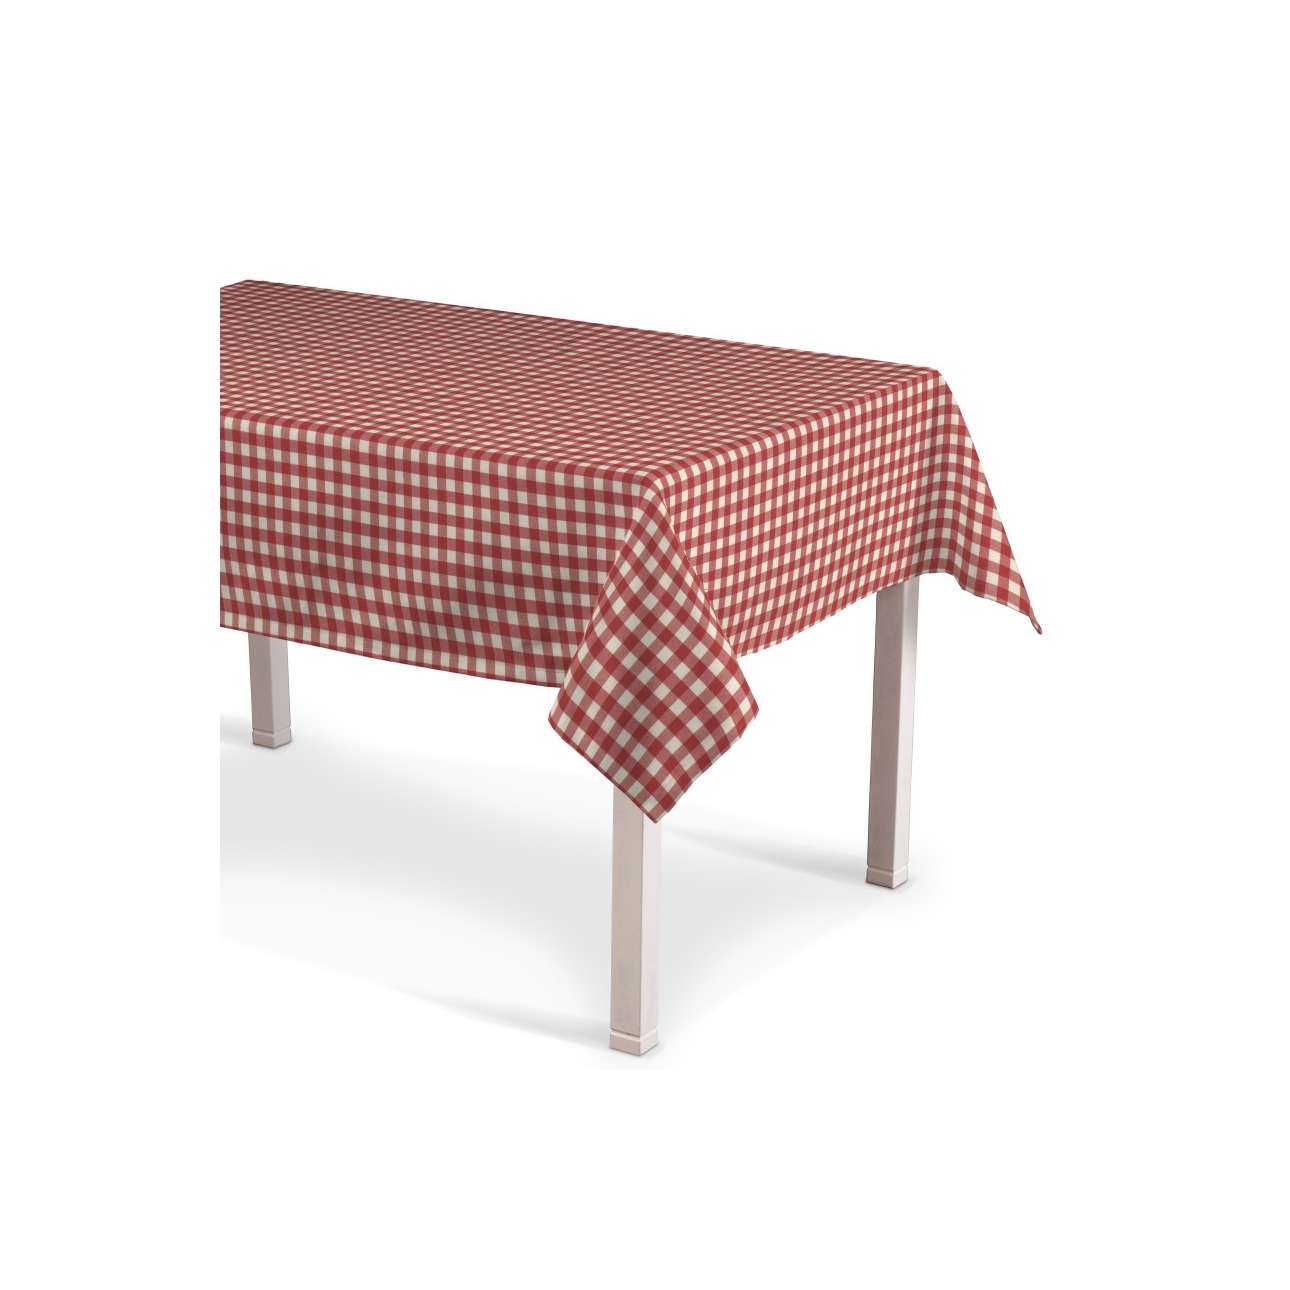 Textil FRANC 435-136-16 prostokątny obrus, Quadro, 130x210 cm, czerwonyxecru 435-136-16